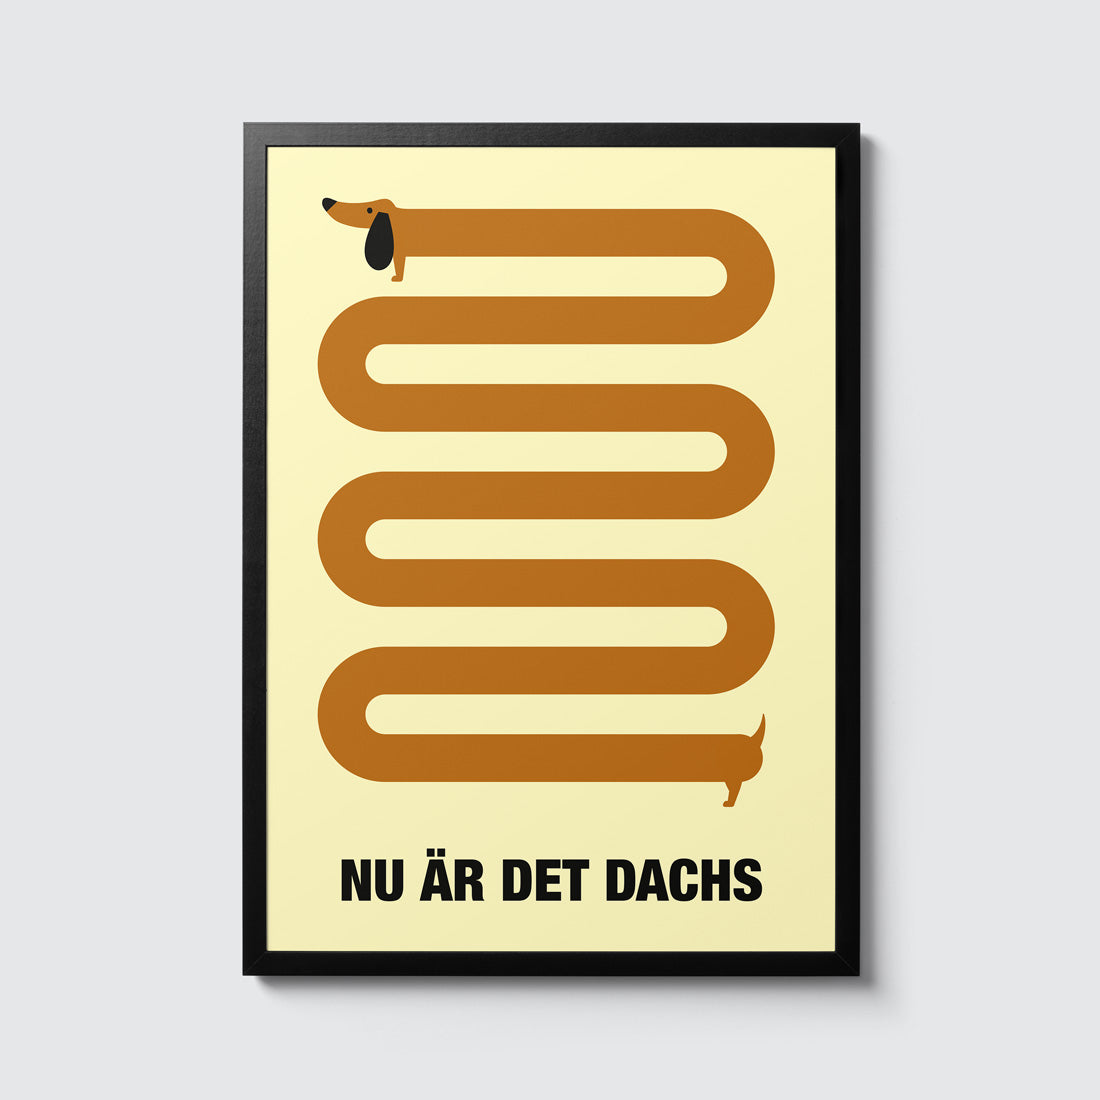 Gult plakat med illustrasjon av en brun dachs som slanger seg nedover i et trekkspillmønster. Under illustrasjonen står det "Nu är det dachs". Formatet er 30x40 cm og passer i standard ramme. 